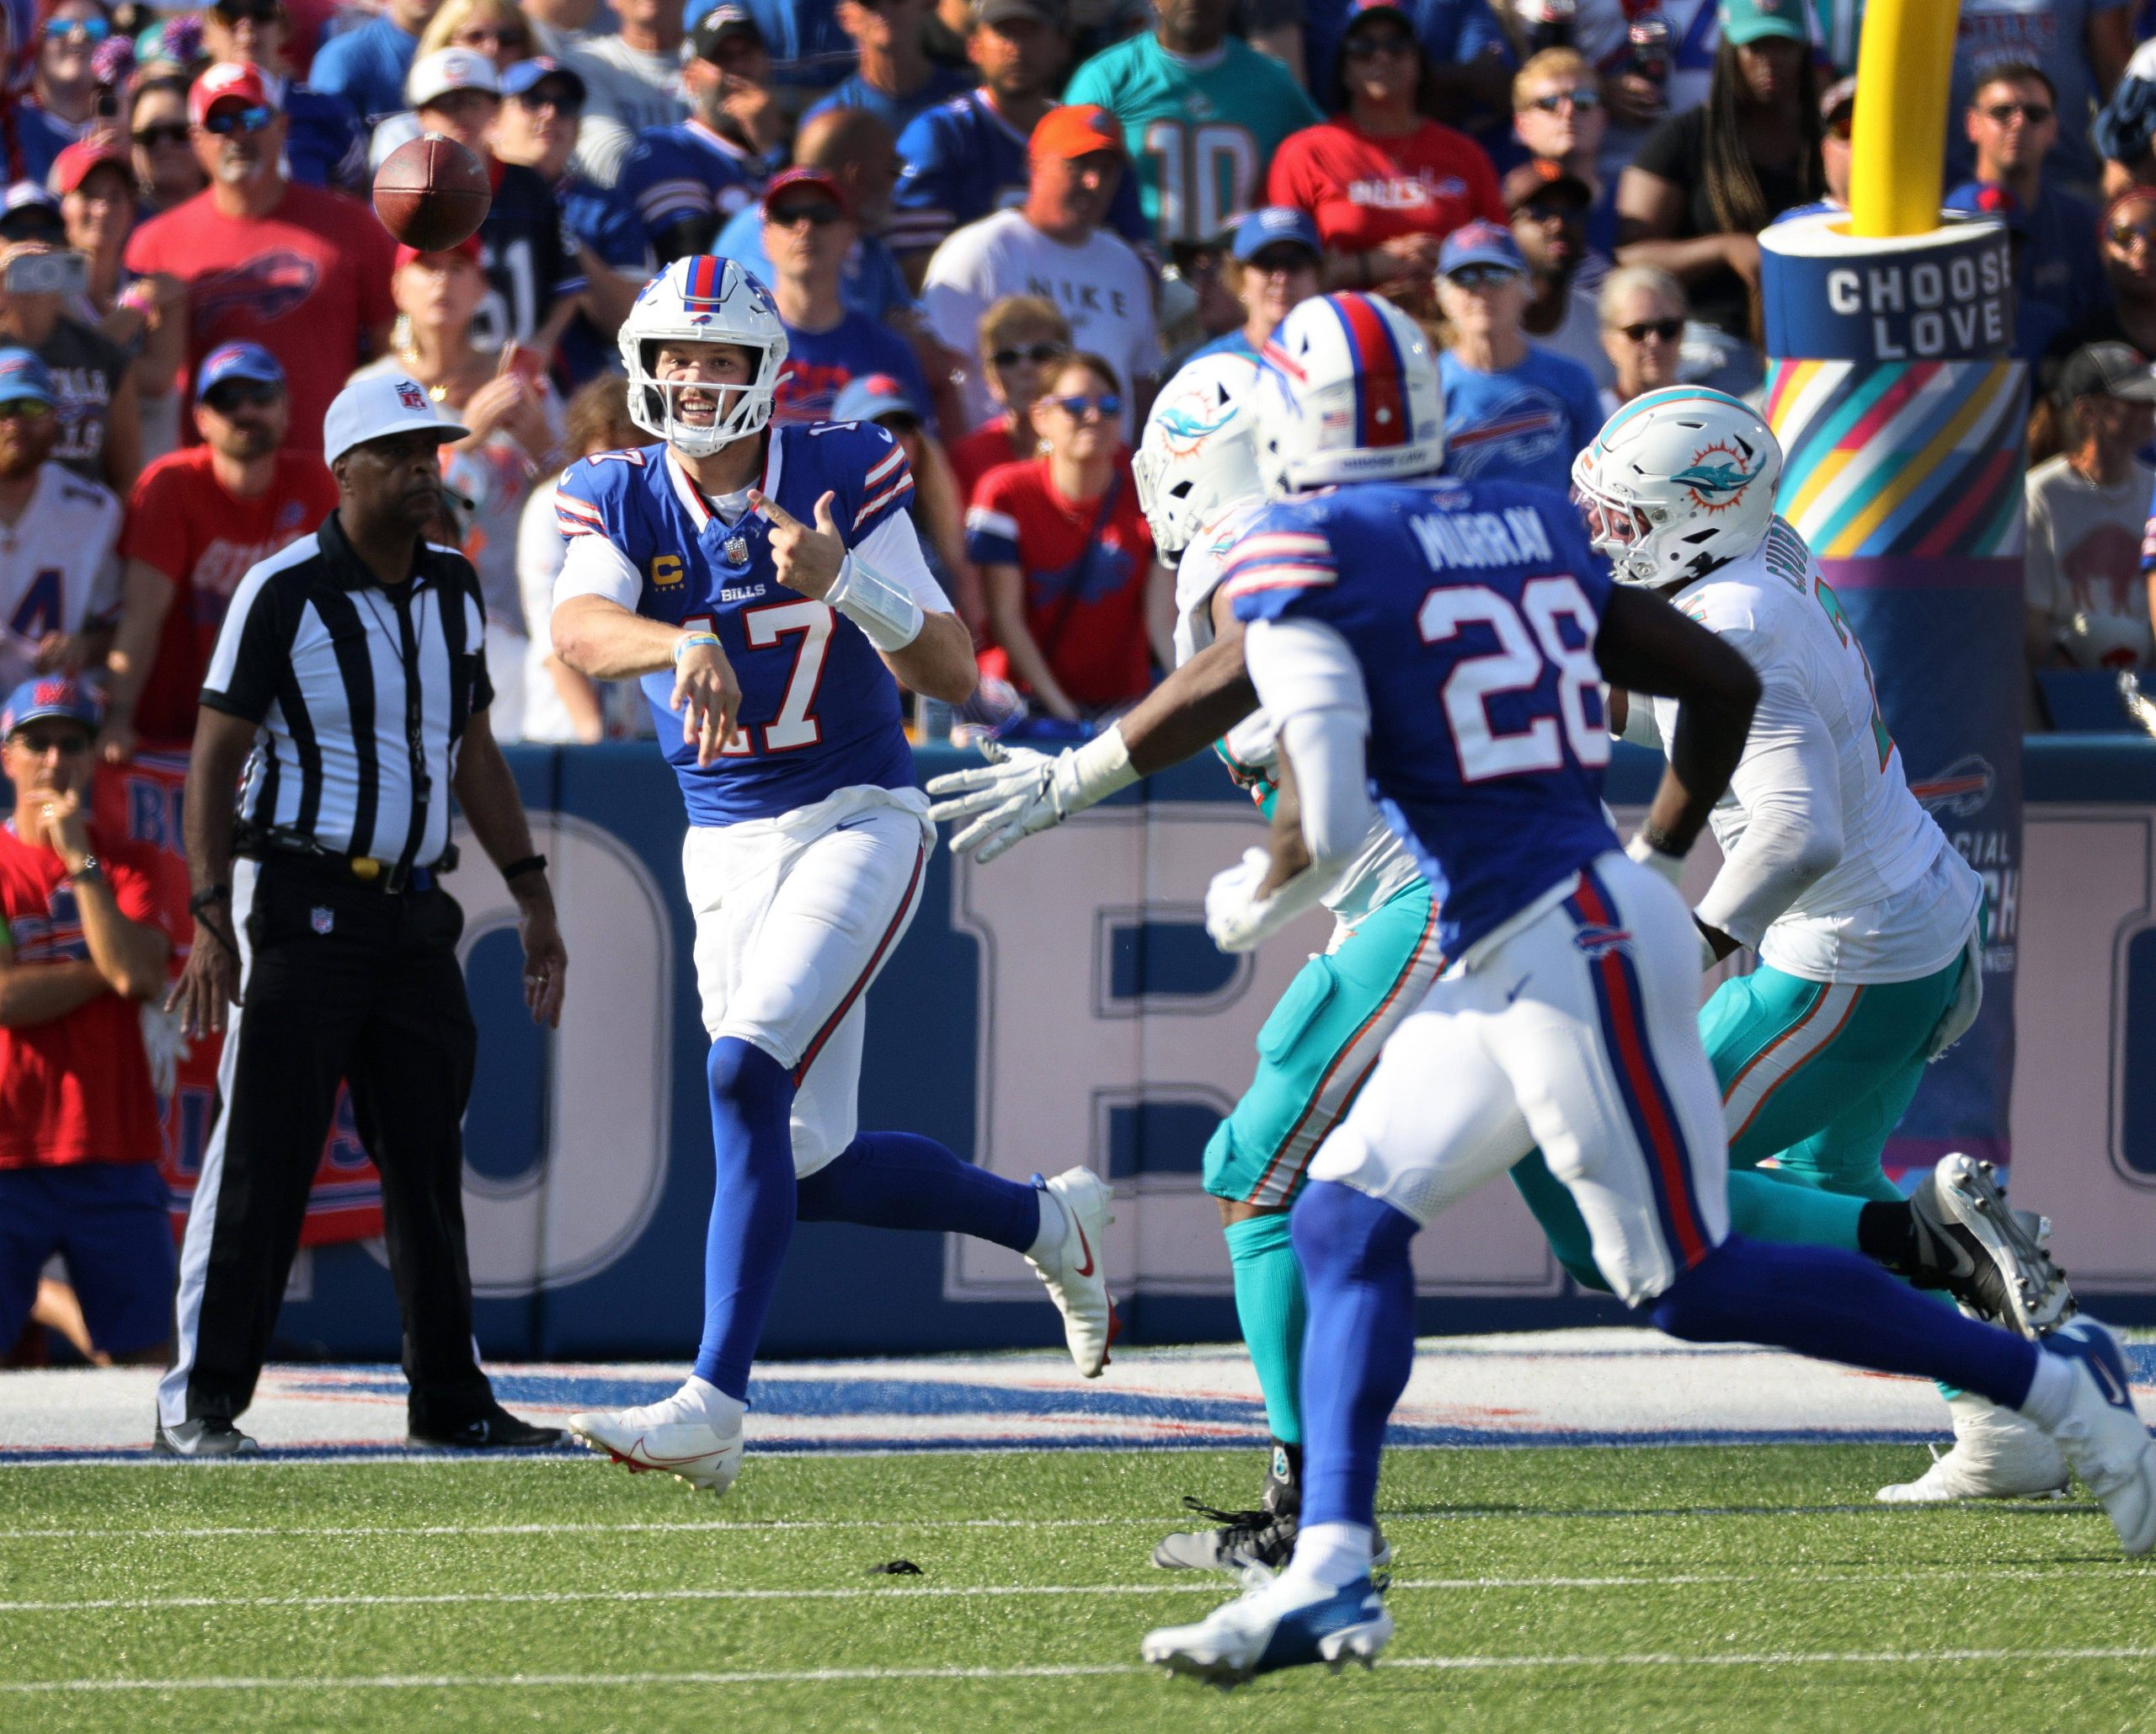 FootballR - NFL - Ein Footballspieler der Bills, Josh Allen, läuft während eines Spiels gegen die Miami Dolphins mit einem Ball in der Hand.